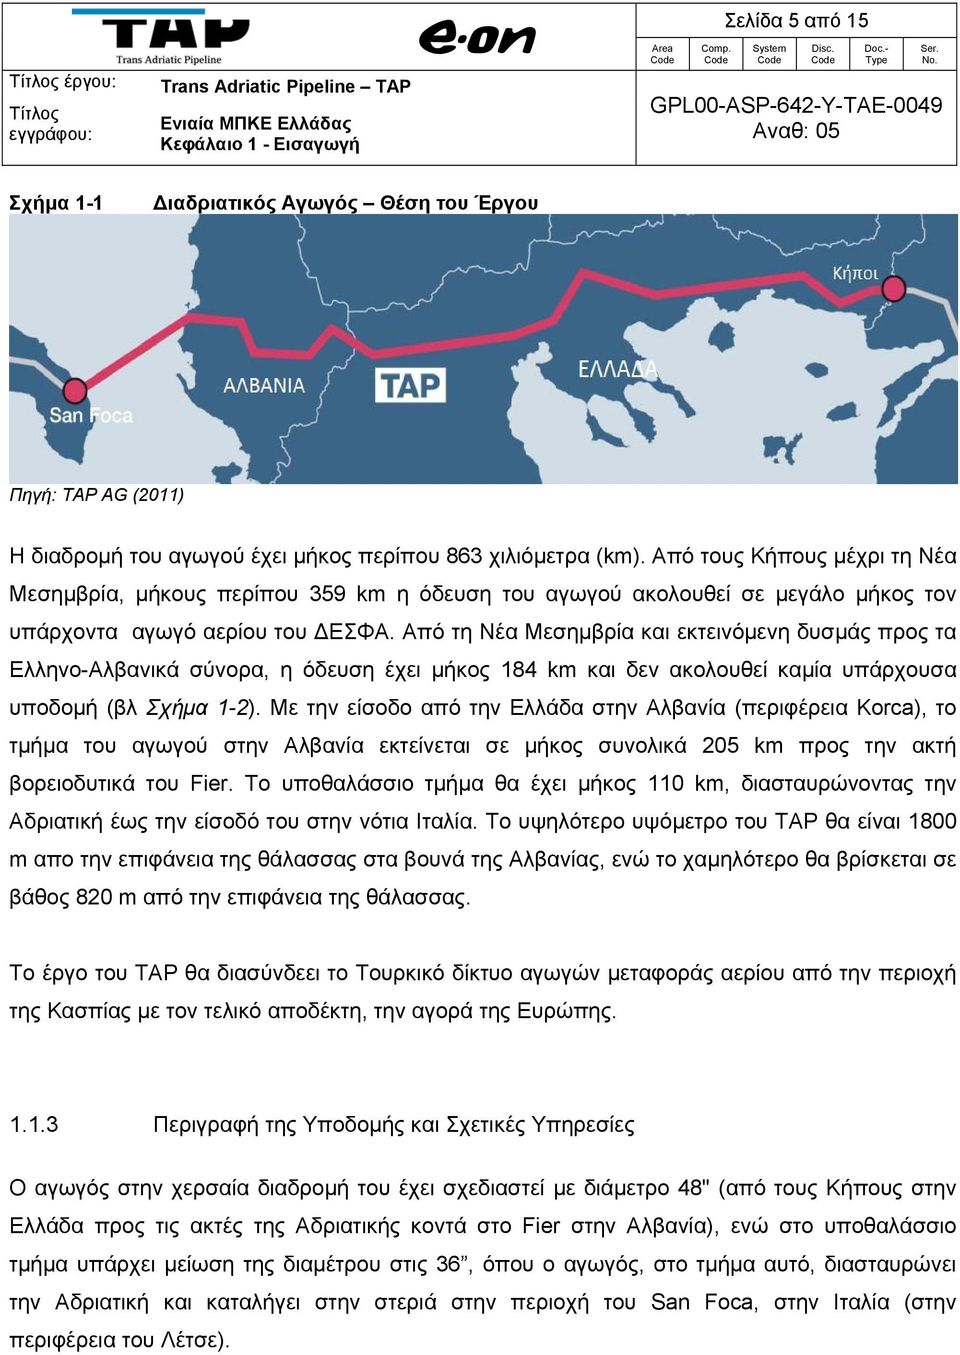 Από τη Νέα Μεσημβρία και εκτεινόμενη δυσμάς προς τα Ελληνο-Αλβανικά σύνορα, η όδευση έχει μήκος 184 km και δεν ακολουθεί καμία υπάρχουσα υποδομή (βλ Σχήμα 1-2).